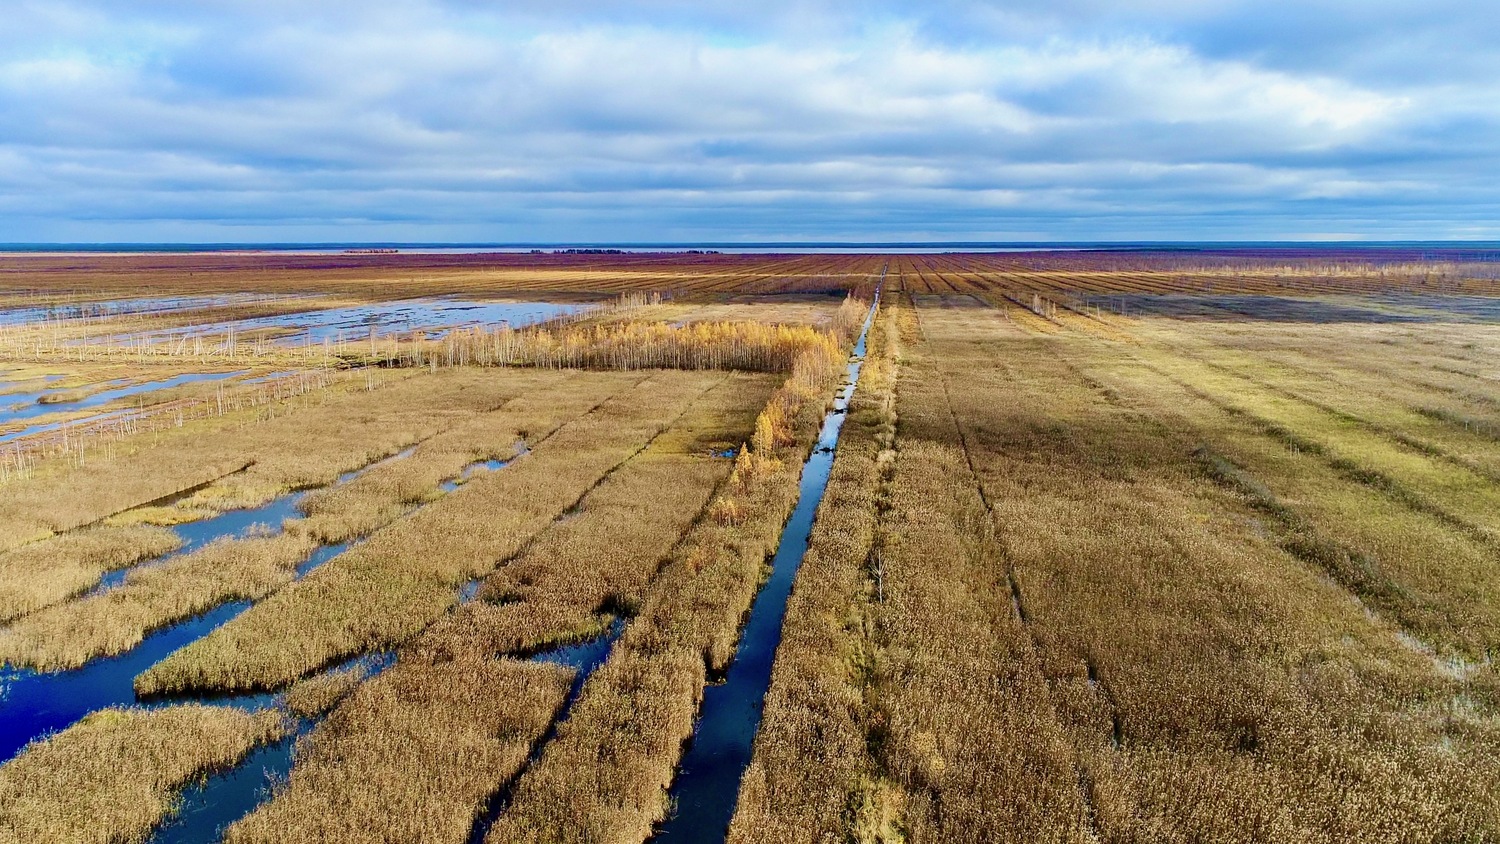 Das Orshinski Mokh-Feuchtgebiet in der Provinz Tver in Russland. Ein Viertel des Feuchtgebietes wurde zwischen 1950 und 1990 trockengelegt für den Abbau von Torf, der als Brennstoff zur Energieversorgung einer benachbarten Siedlung genutzt wurde.